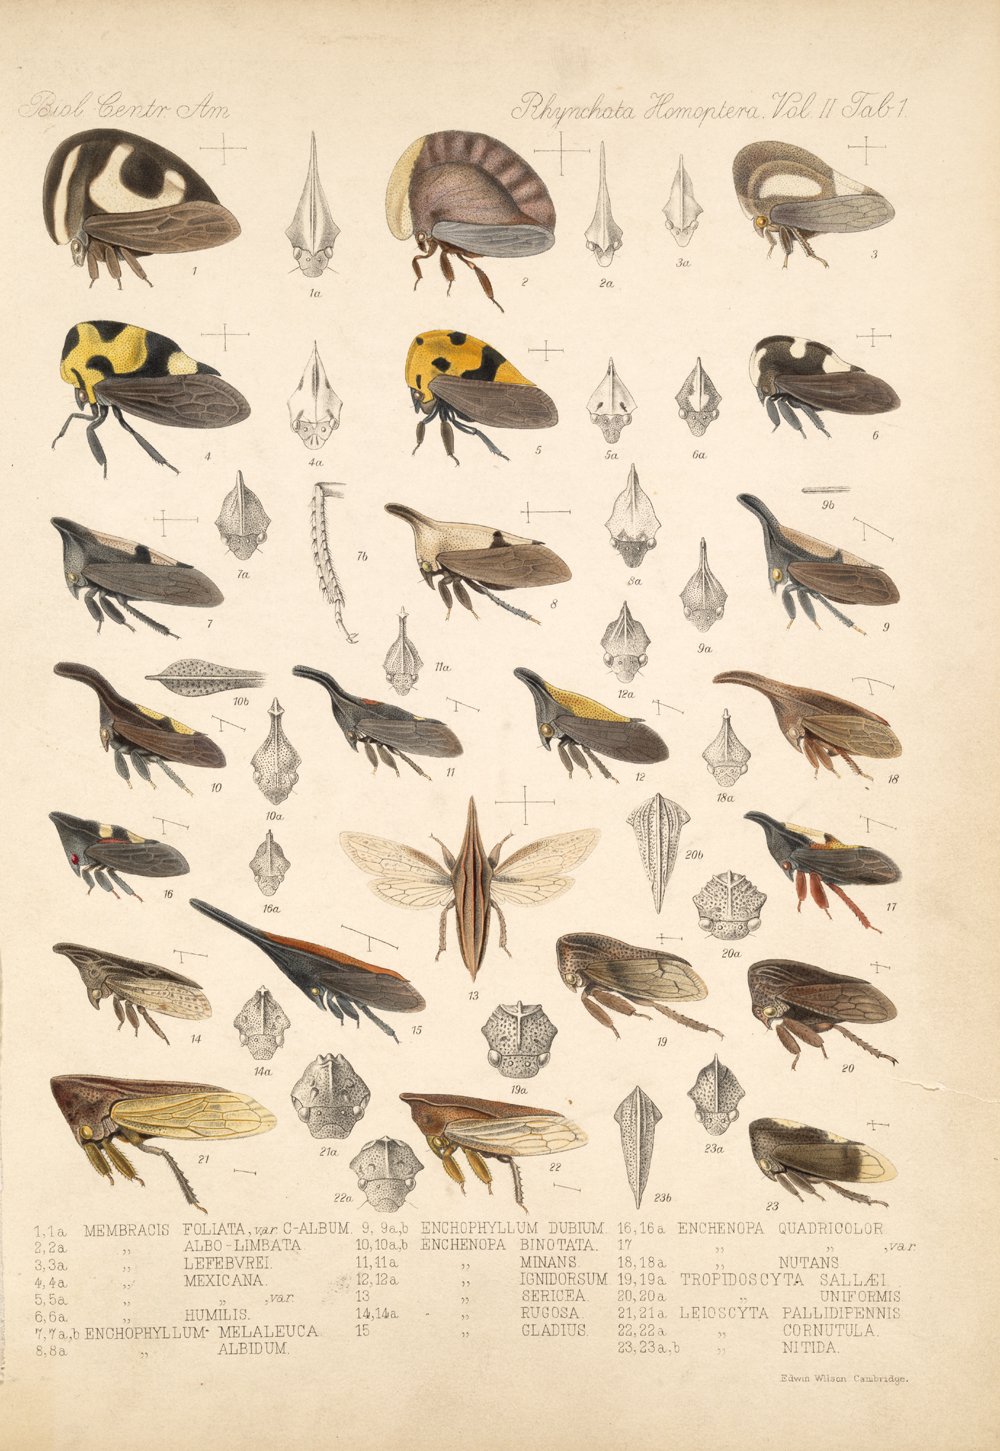 Une planche ancienne montrant des membracides, des insectes qui étonnent depuis longtemps. © Biologia Centrali-Americana